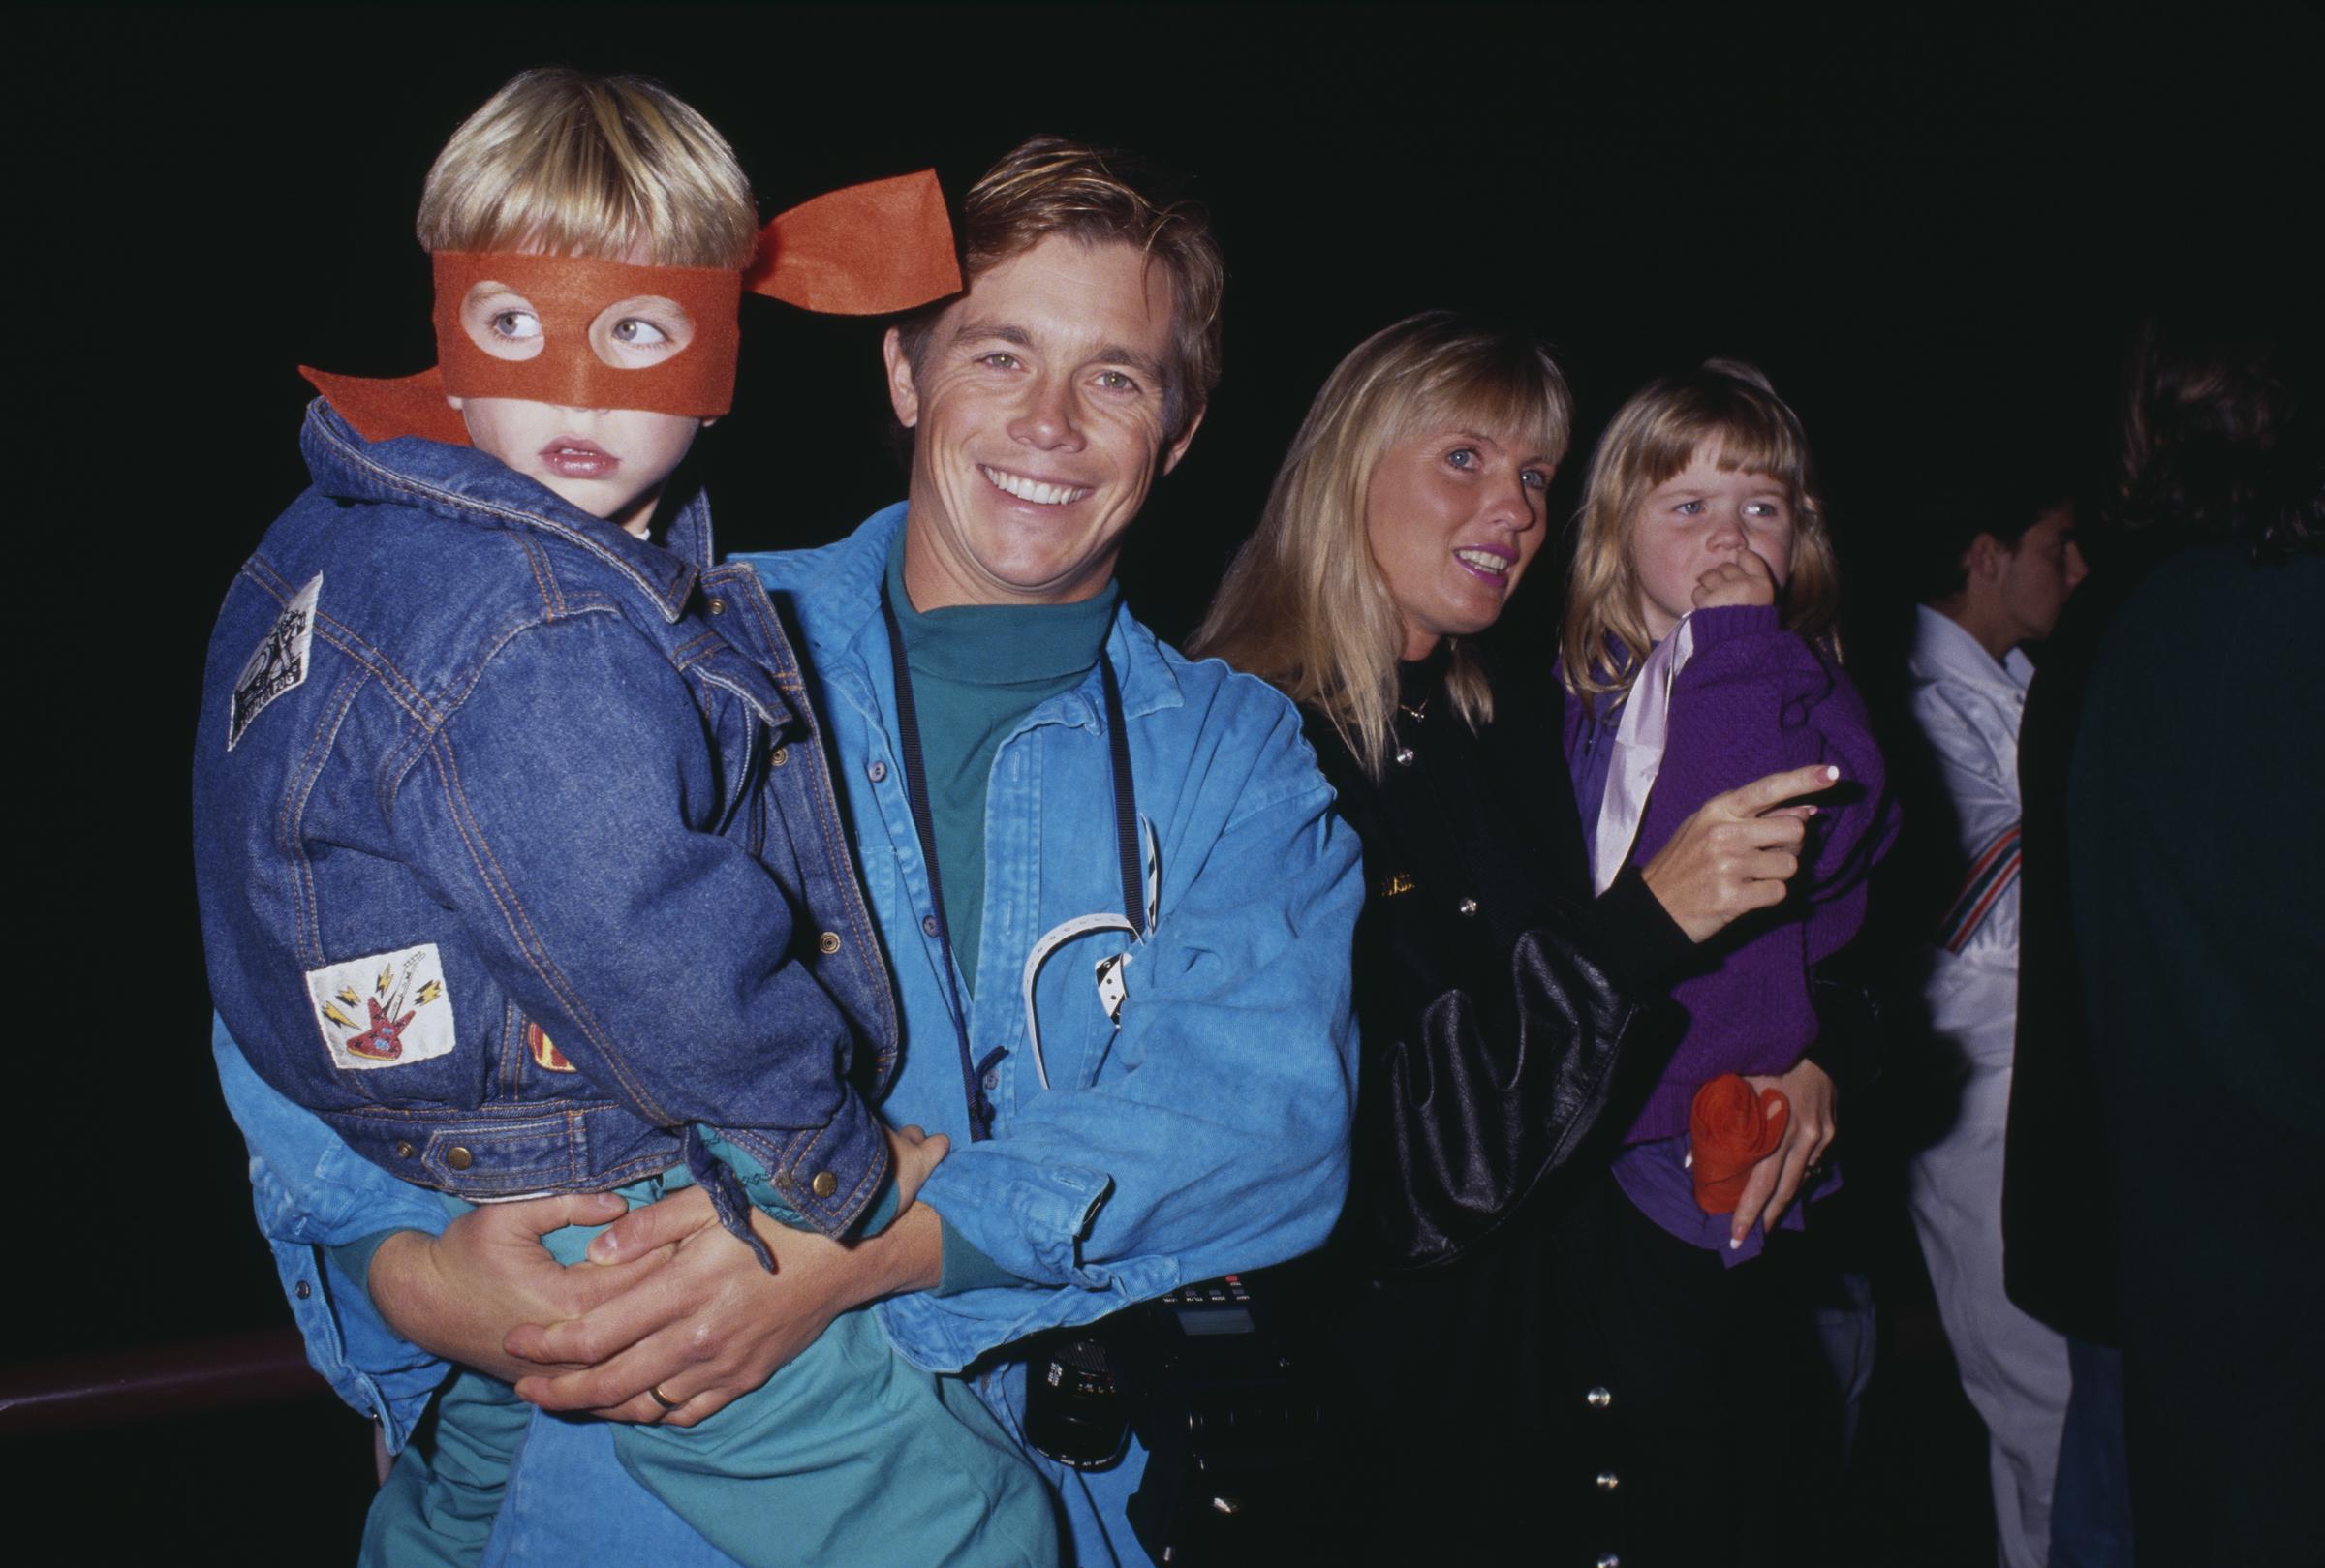 Christopher Atkins y Lyn Barron con sus hijos en la gira Rock &amp; Roll "Coming Out of Their Shells" de las Tortugas Ninja Mutantes el 21 de noviembre de 1990, en Universal City, California. | Fuente: Getty Images